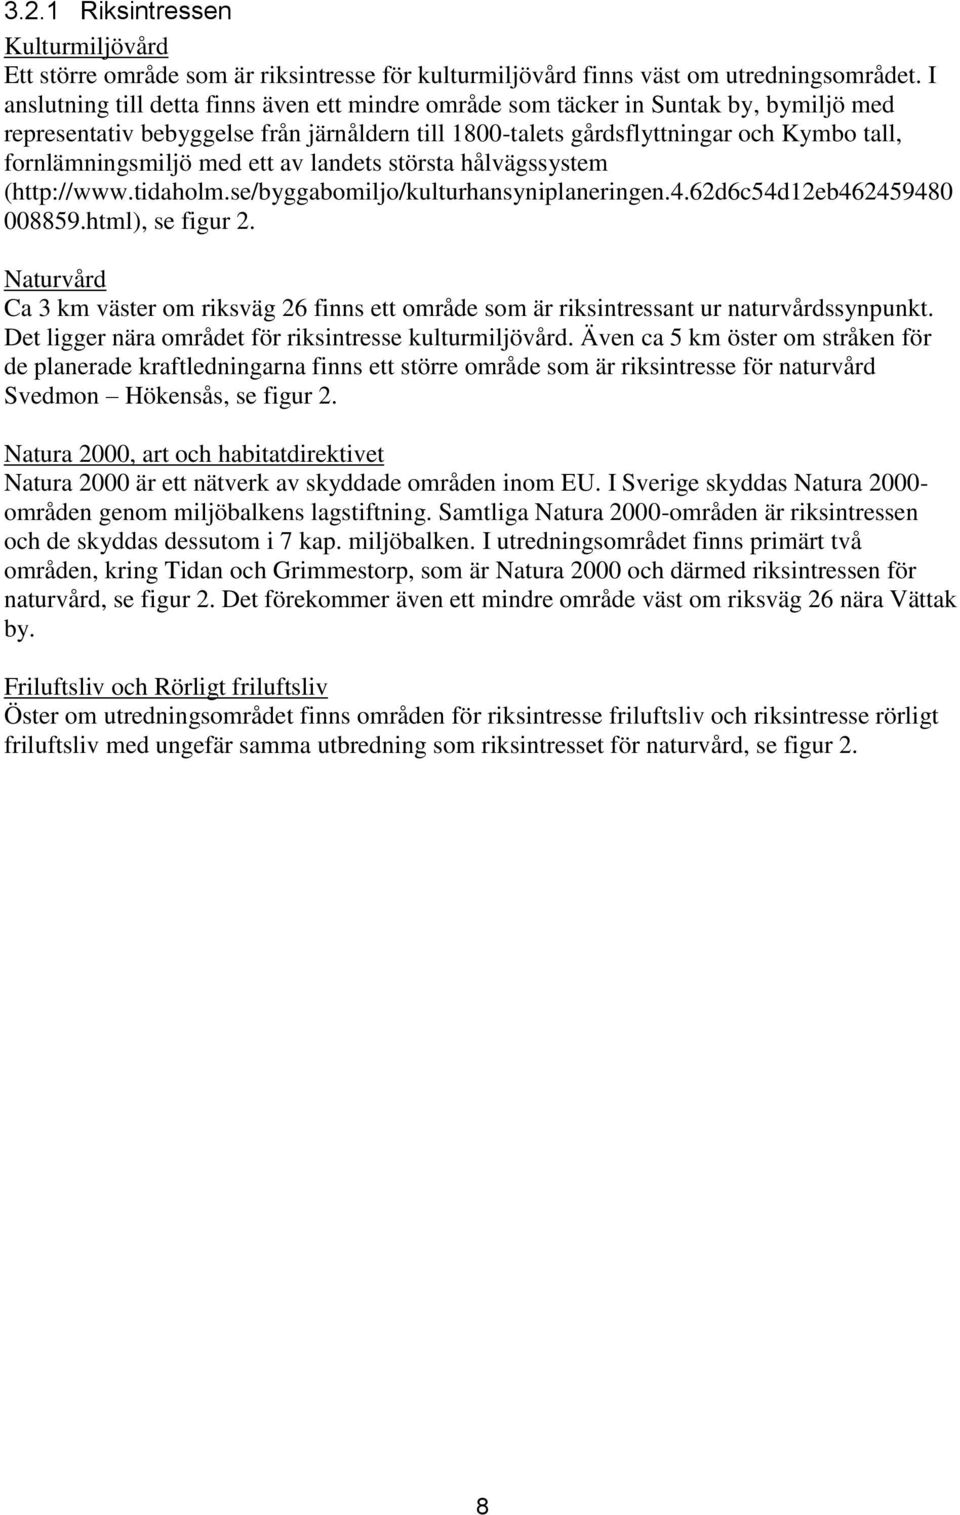 med ett av landets största hålvägssystem (http://www.tidaholm.se/byggabomiljo/kulturhansyniplaneringen.4.62d6c54d12eb462459480 008859.html), se figur 2.